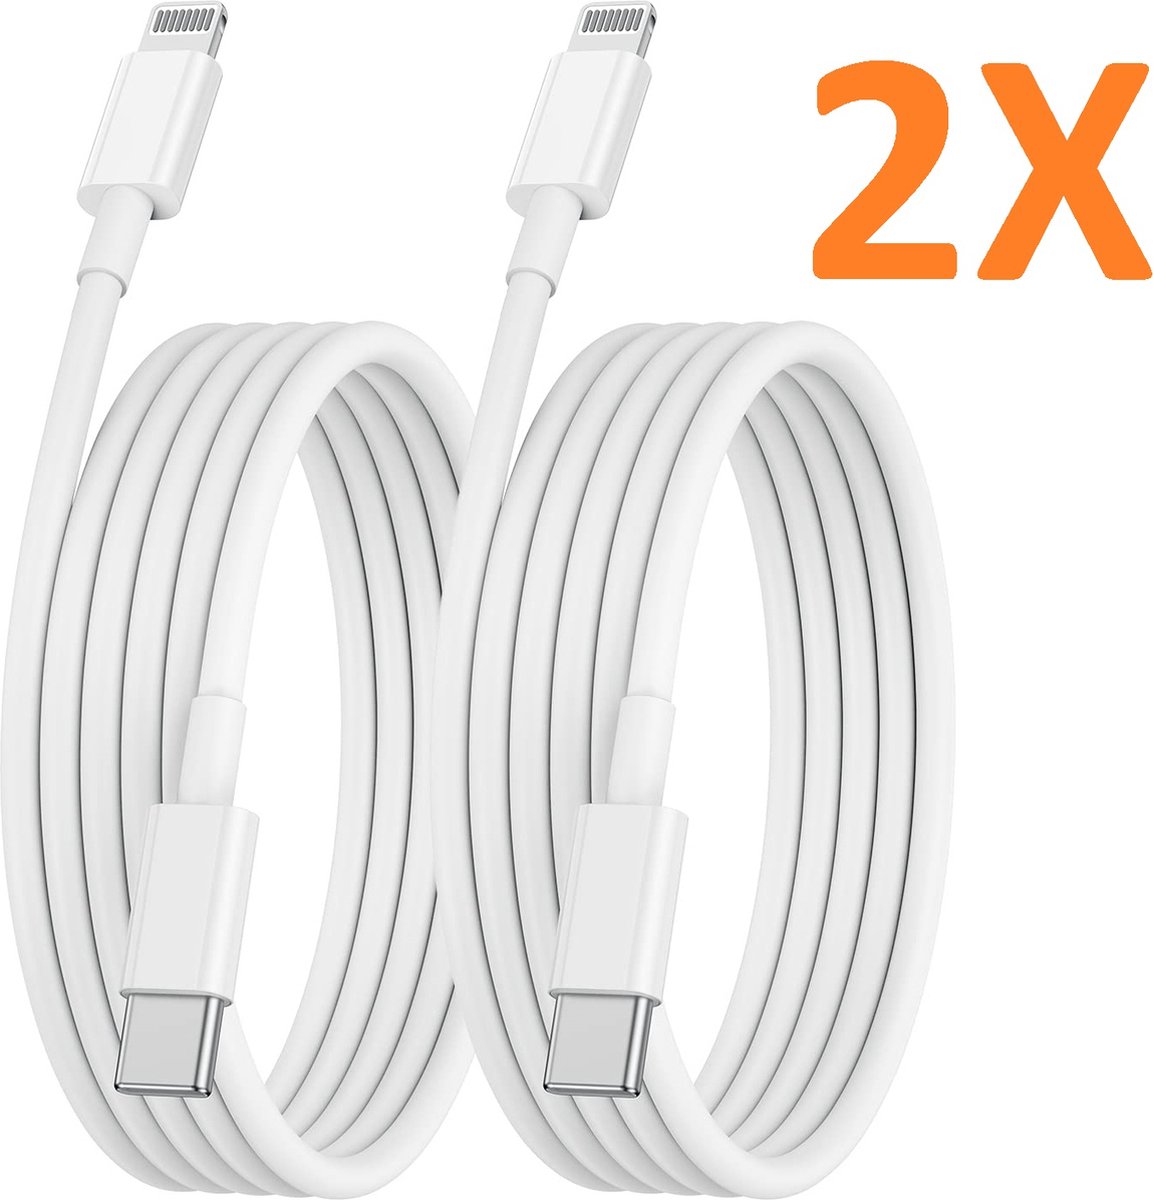 MOENS - Câbles de chargement USB 2 pièces Chargeur Apple iPhone